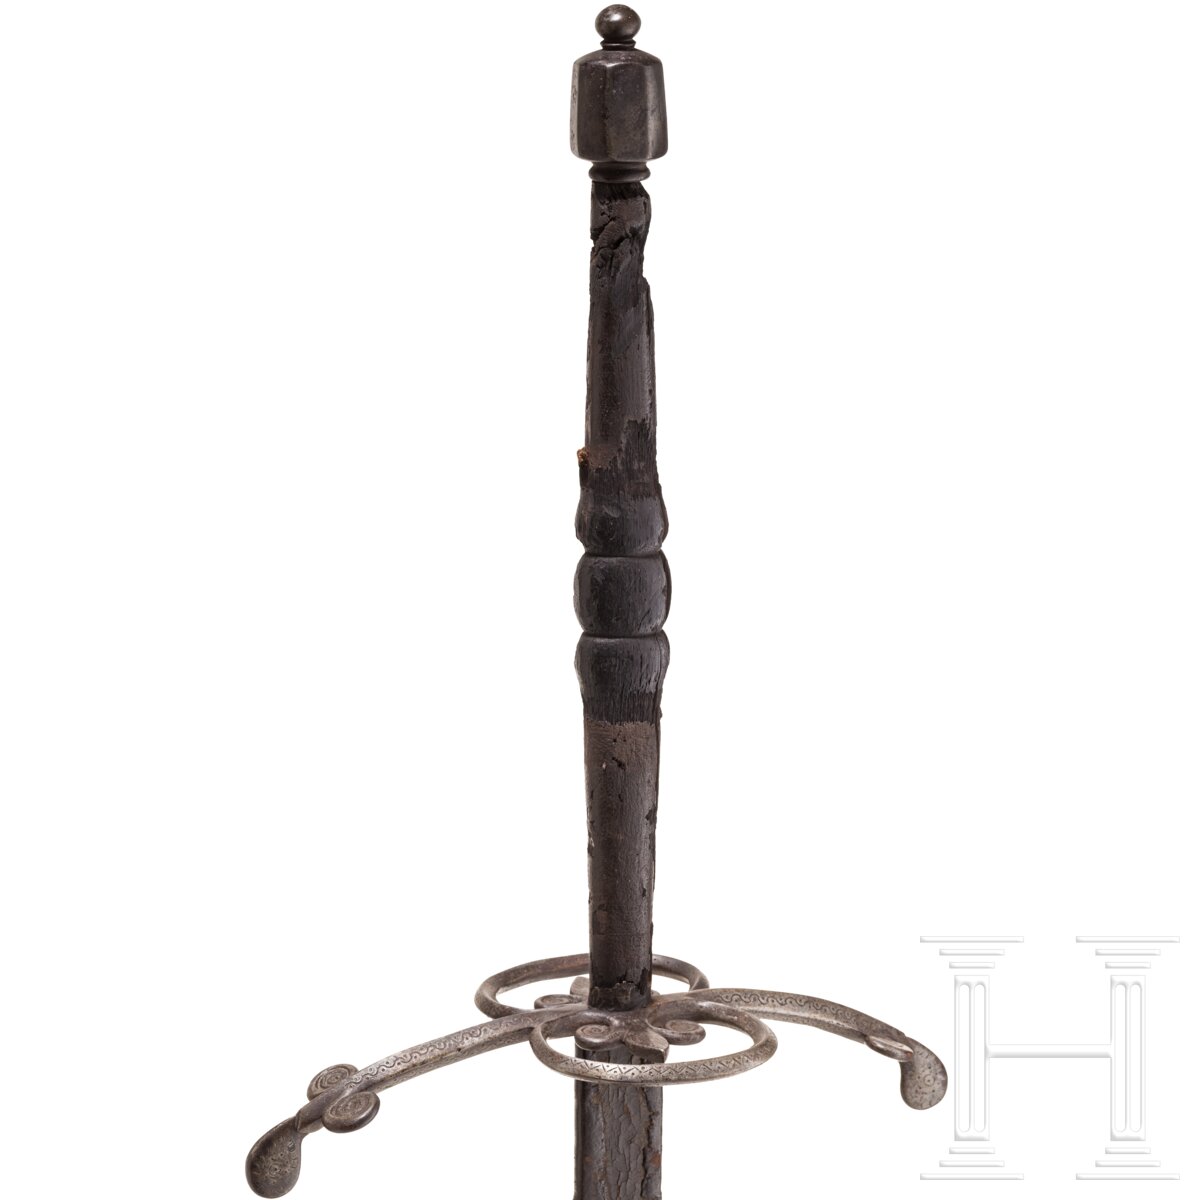 Geflammter Bidenhänder, süddeutsch, um 1600 - Image 6 of 10